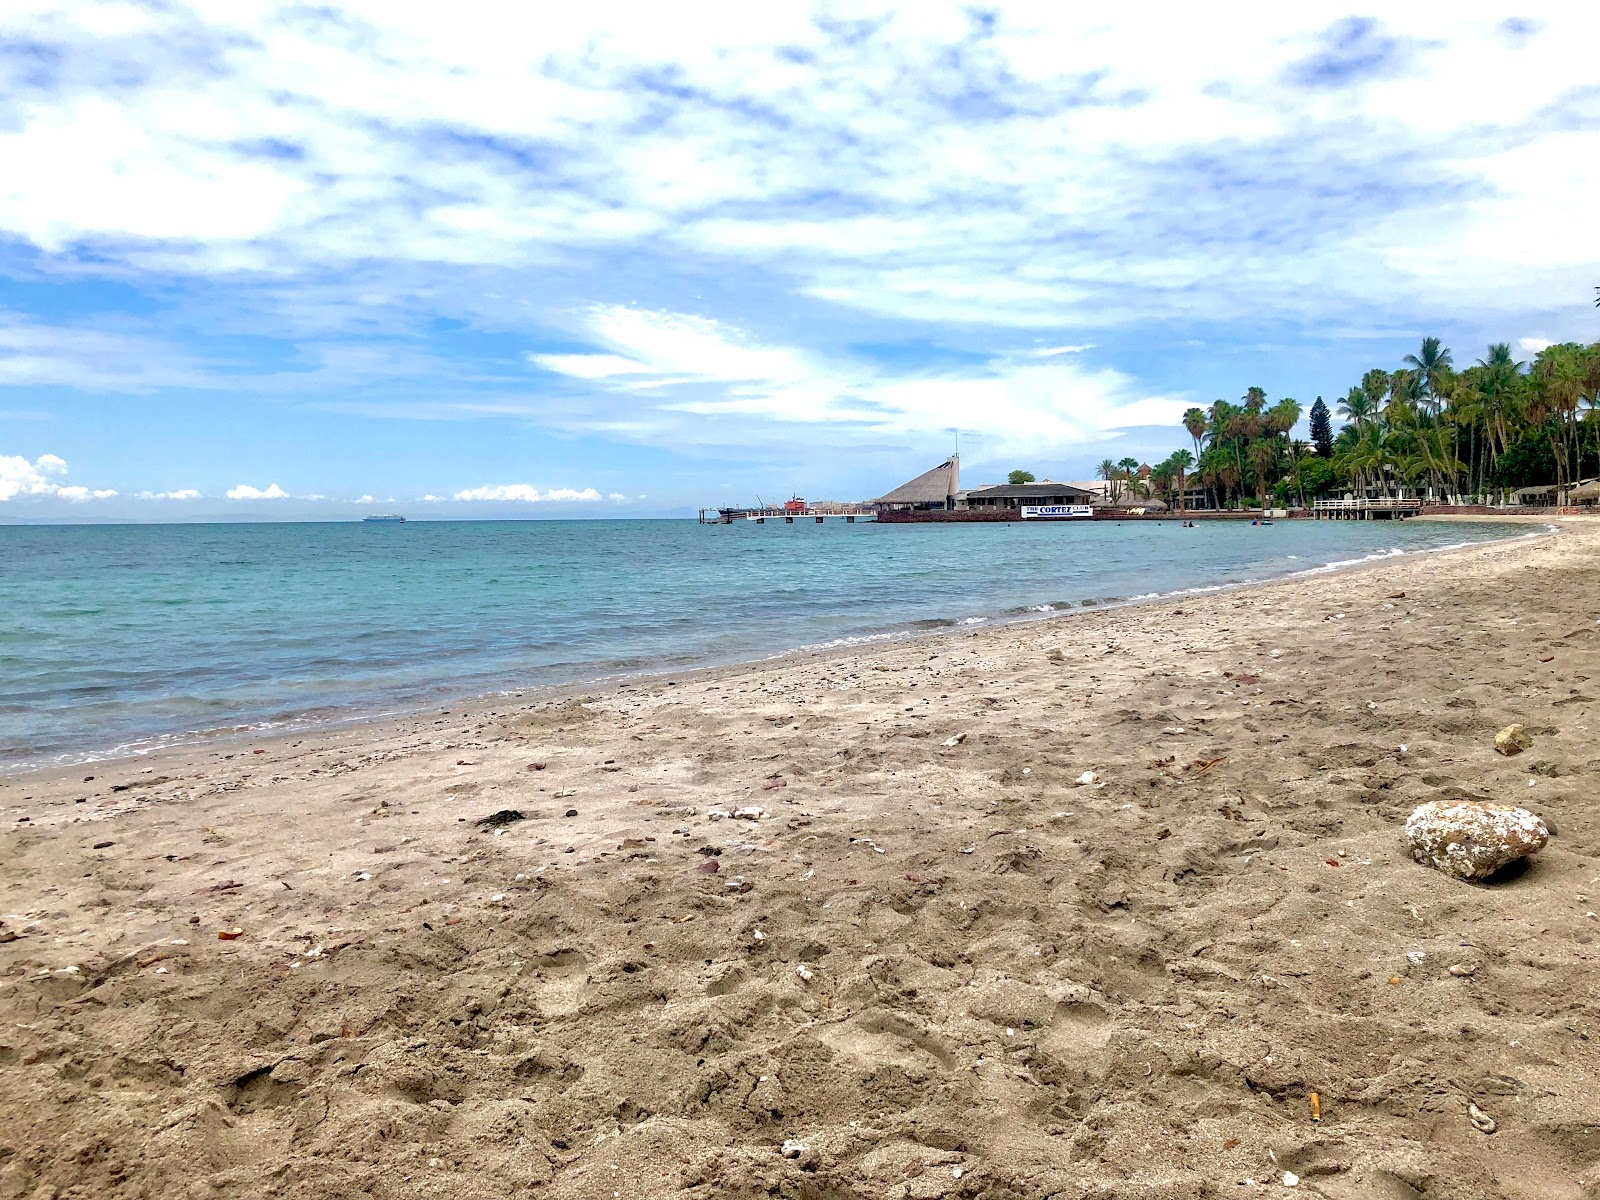 Zdjęcie Playa La Concha - popularne miejsce wśród znawców relaksu